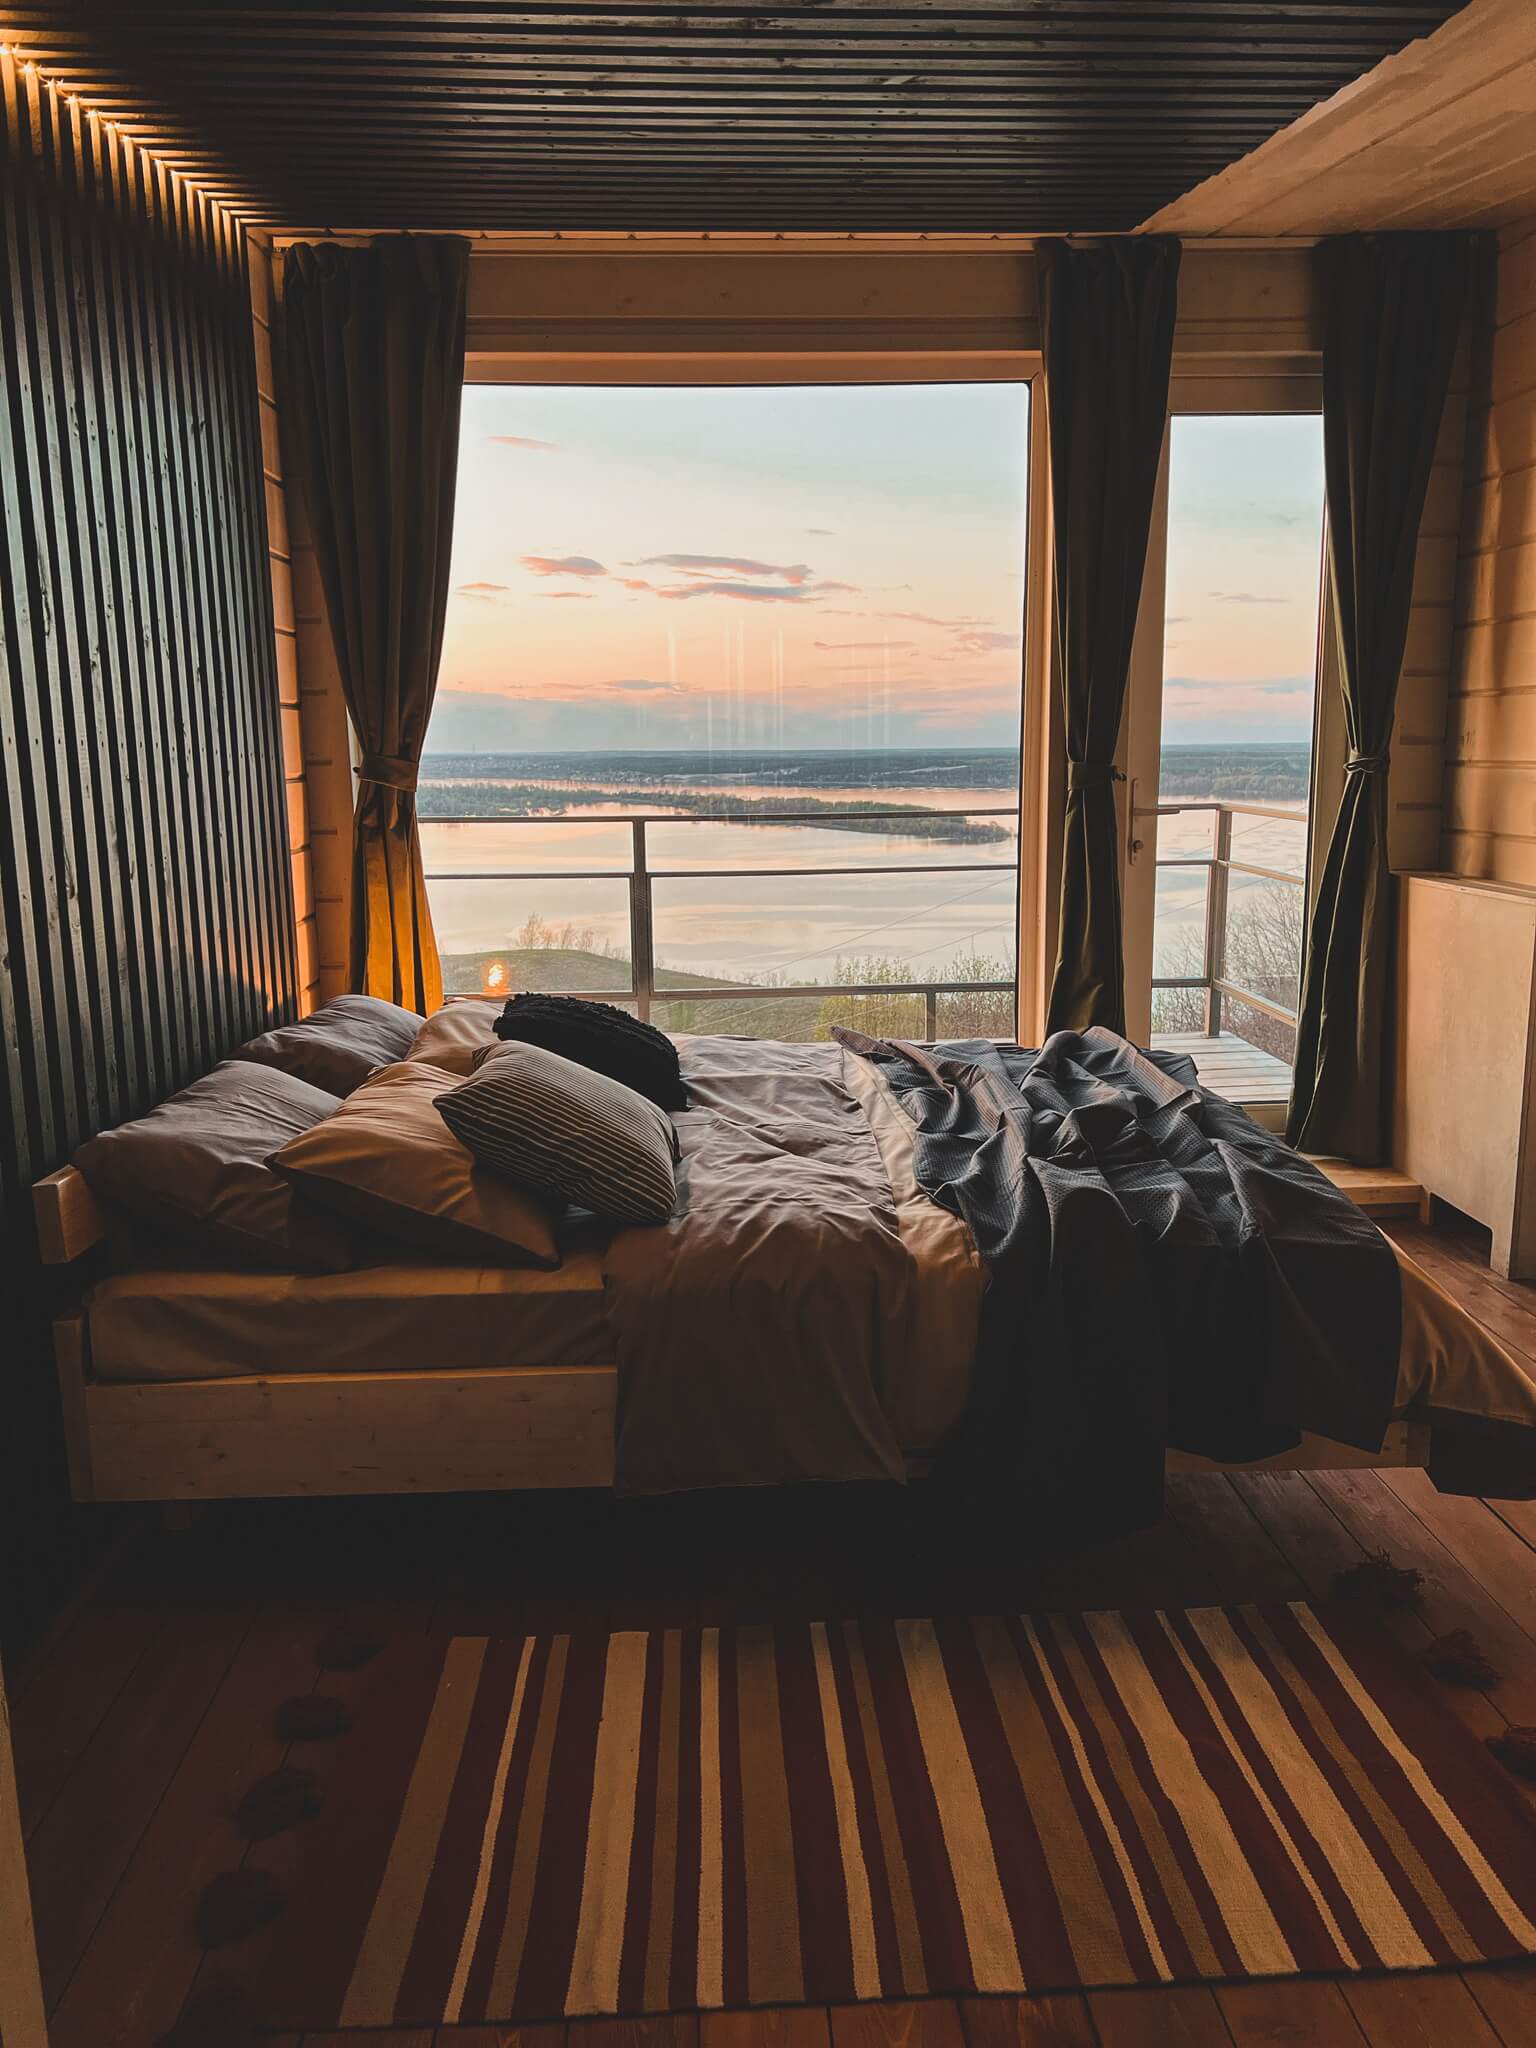 Большая, двуспальная кровать расположена возле панорамного окна.